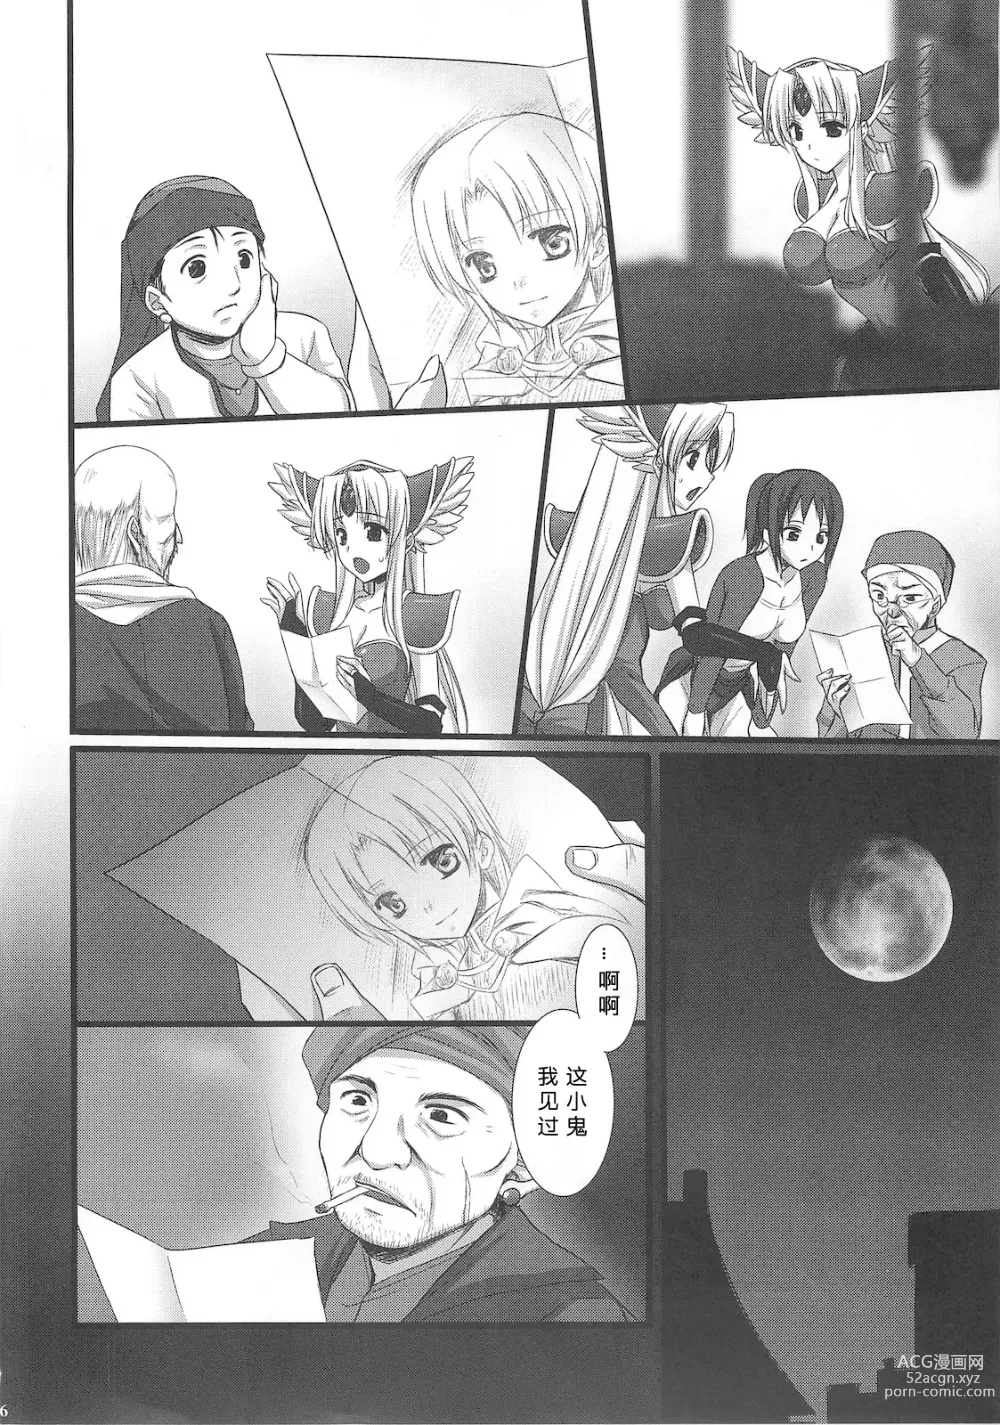 Page 7 of doujinshi Saitei Rakusatsu Kakaku